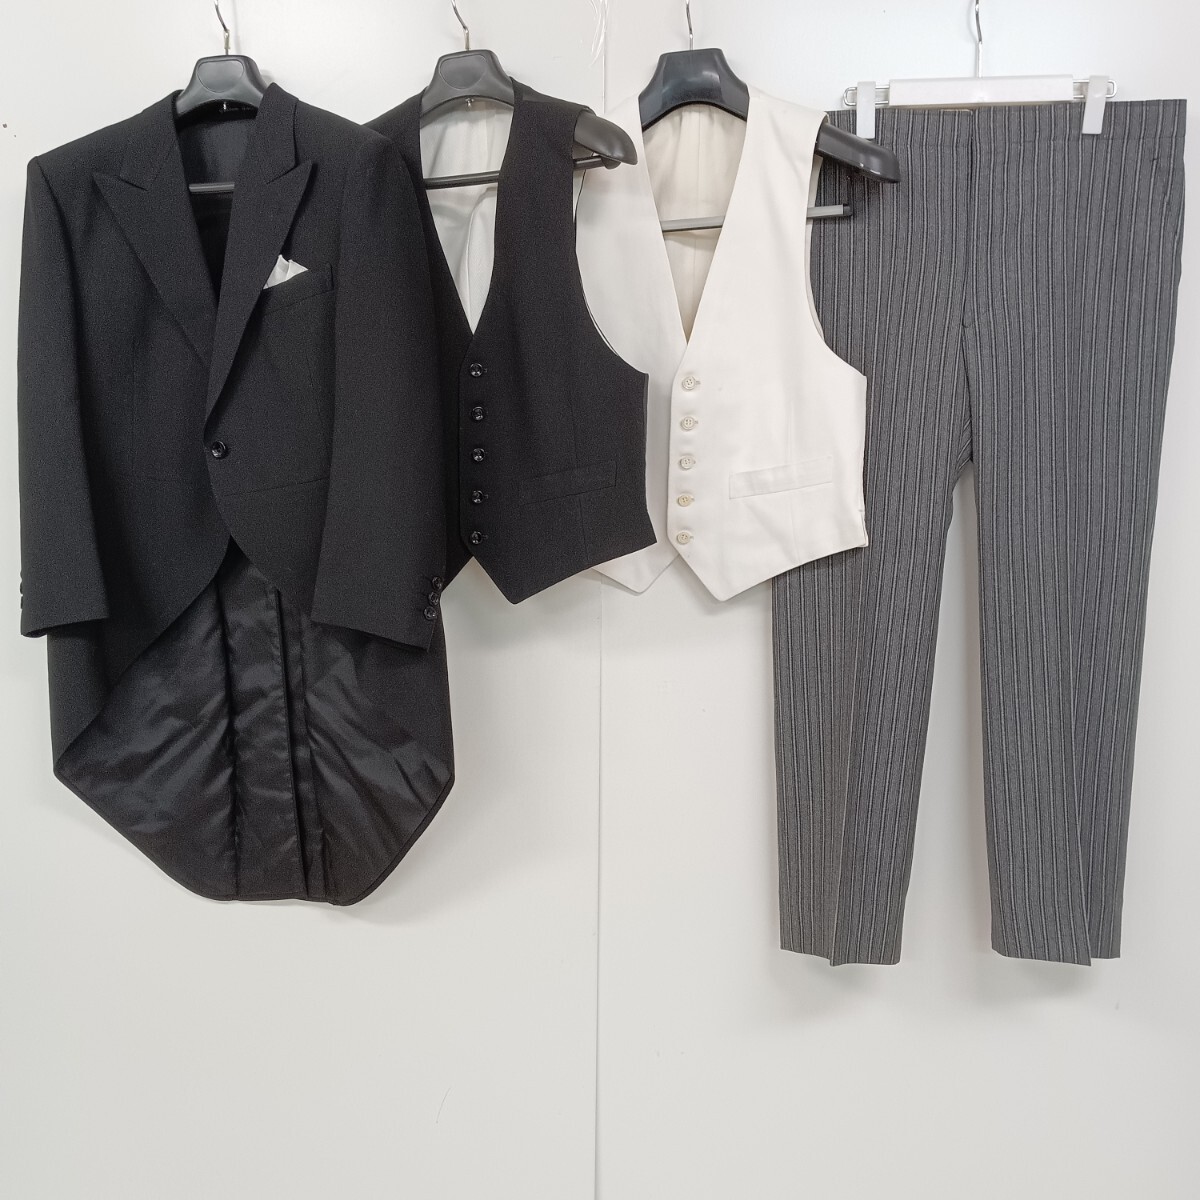 H24 Scabalskya bar gentleman tuxedo tailcoat 4 point set order formal men's tuxedo the best pants slacks chronicle name equipped 